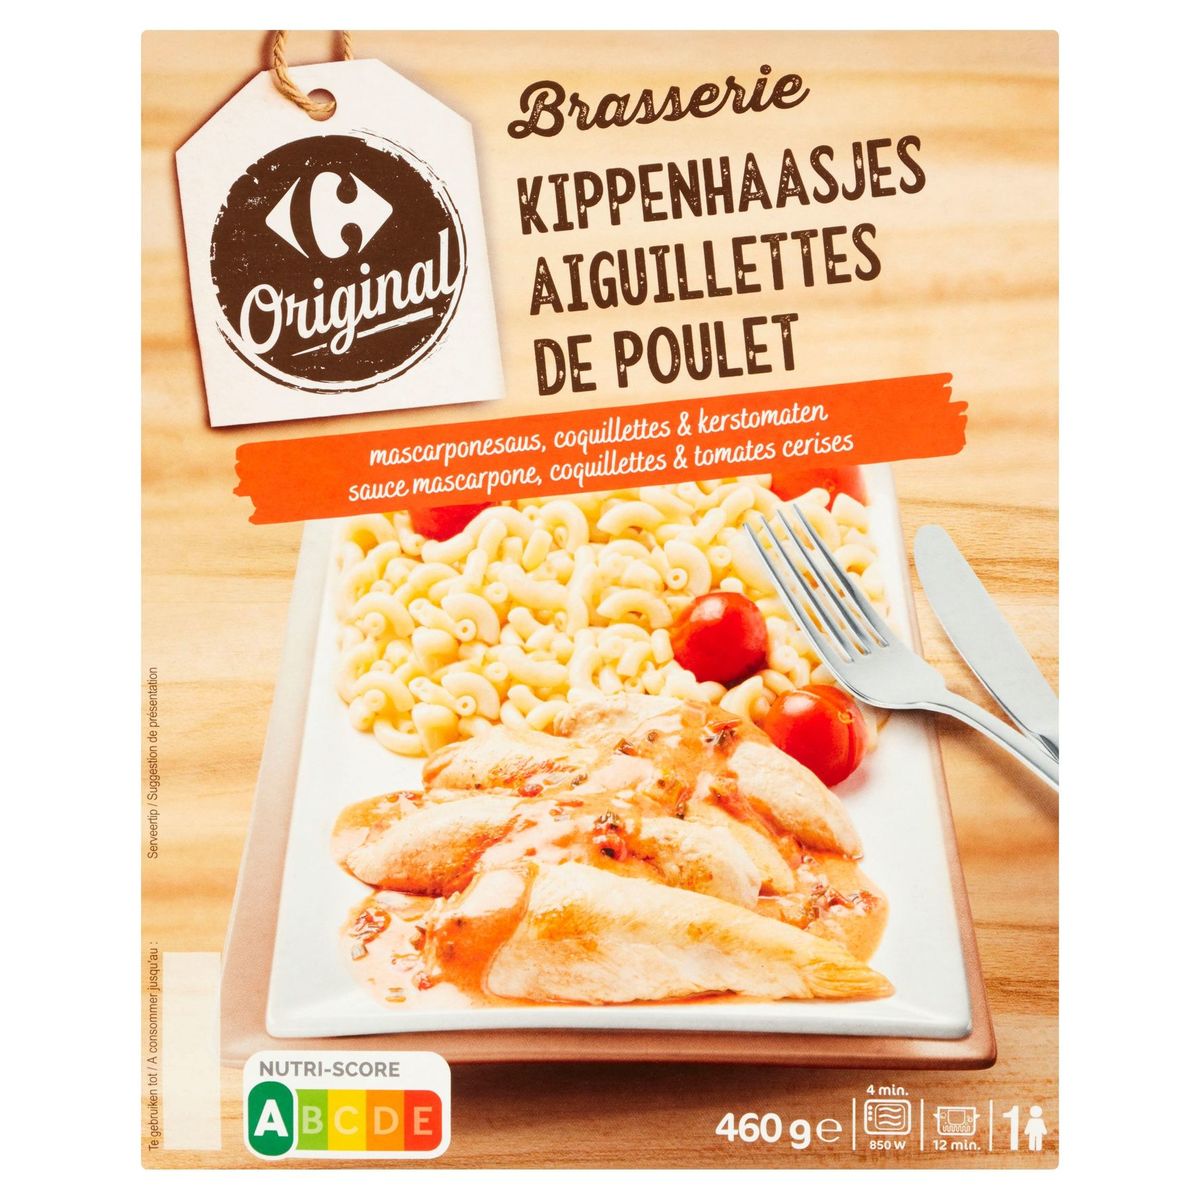 Carrefour Original Brasserie Aiguillettes de Poulet 460 g